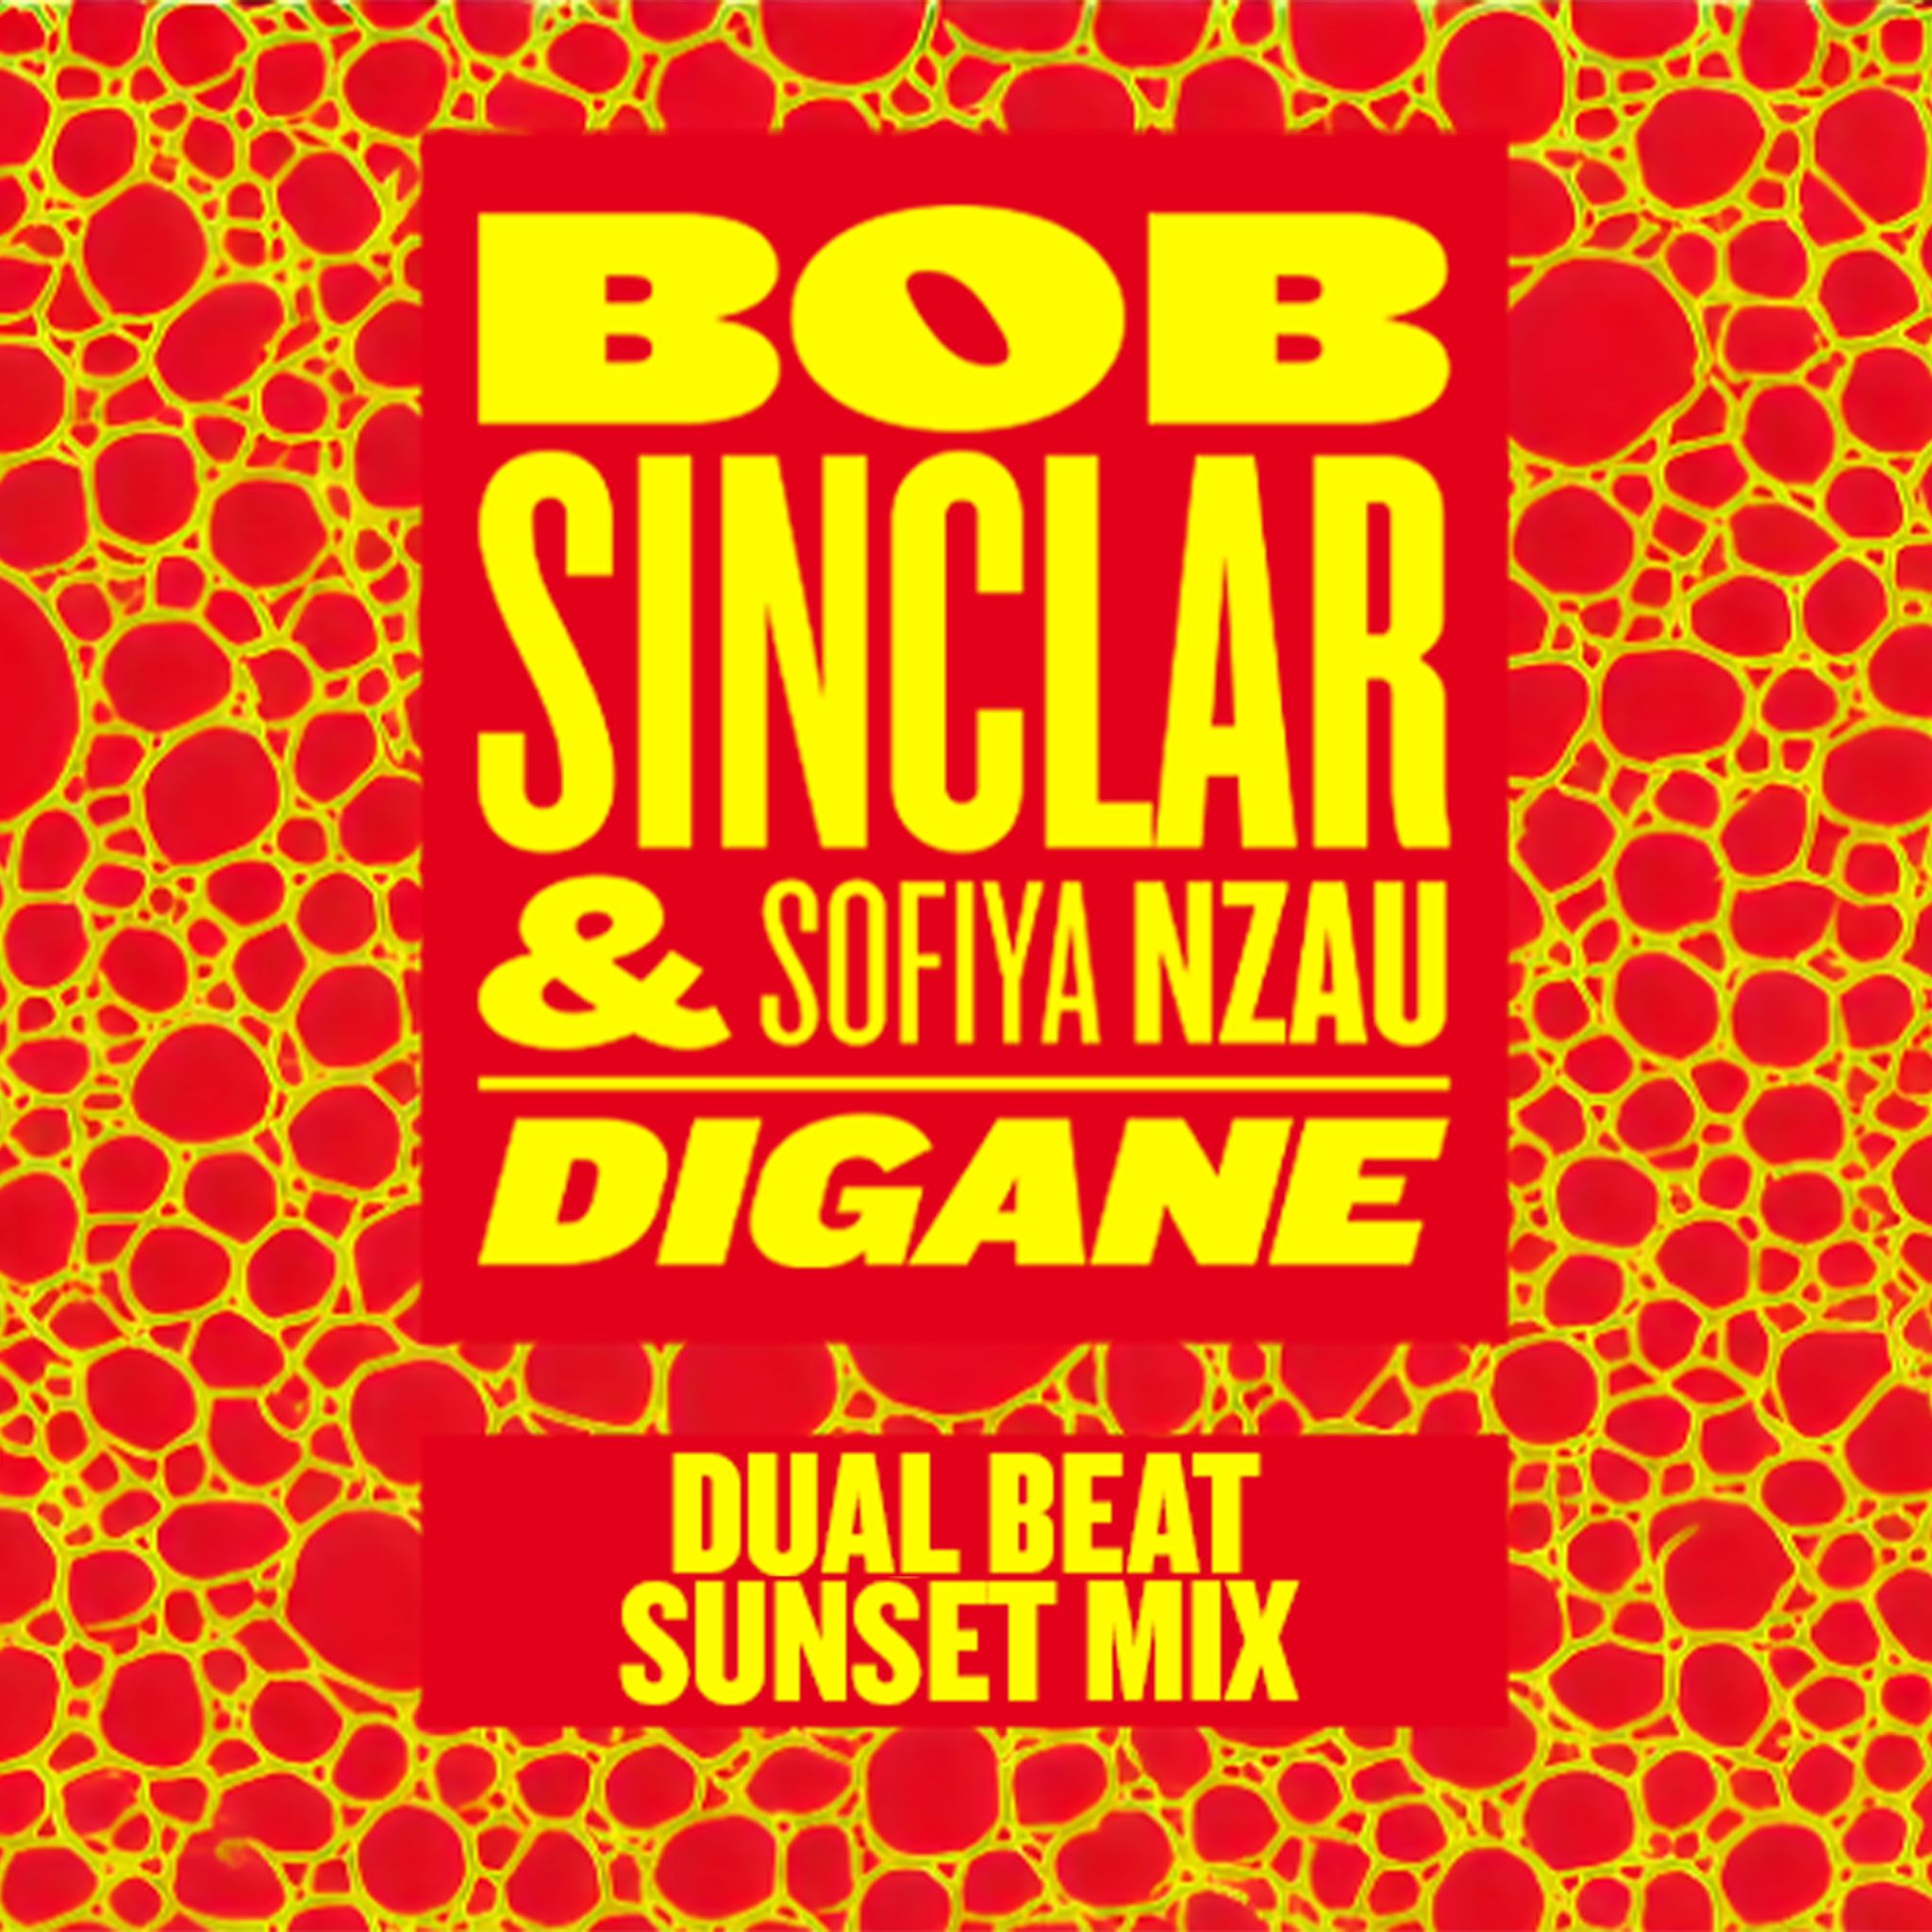 La nuova hit di Bob Sinclar ha due versioni made in Bari